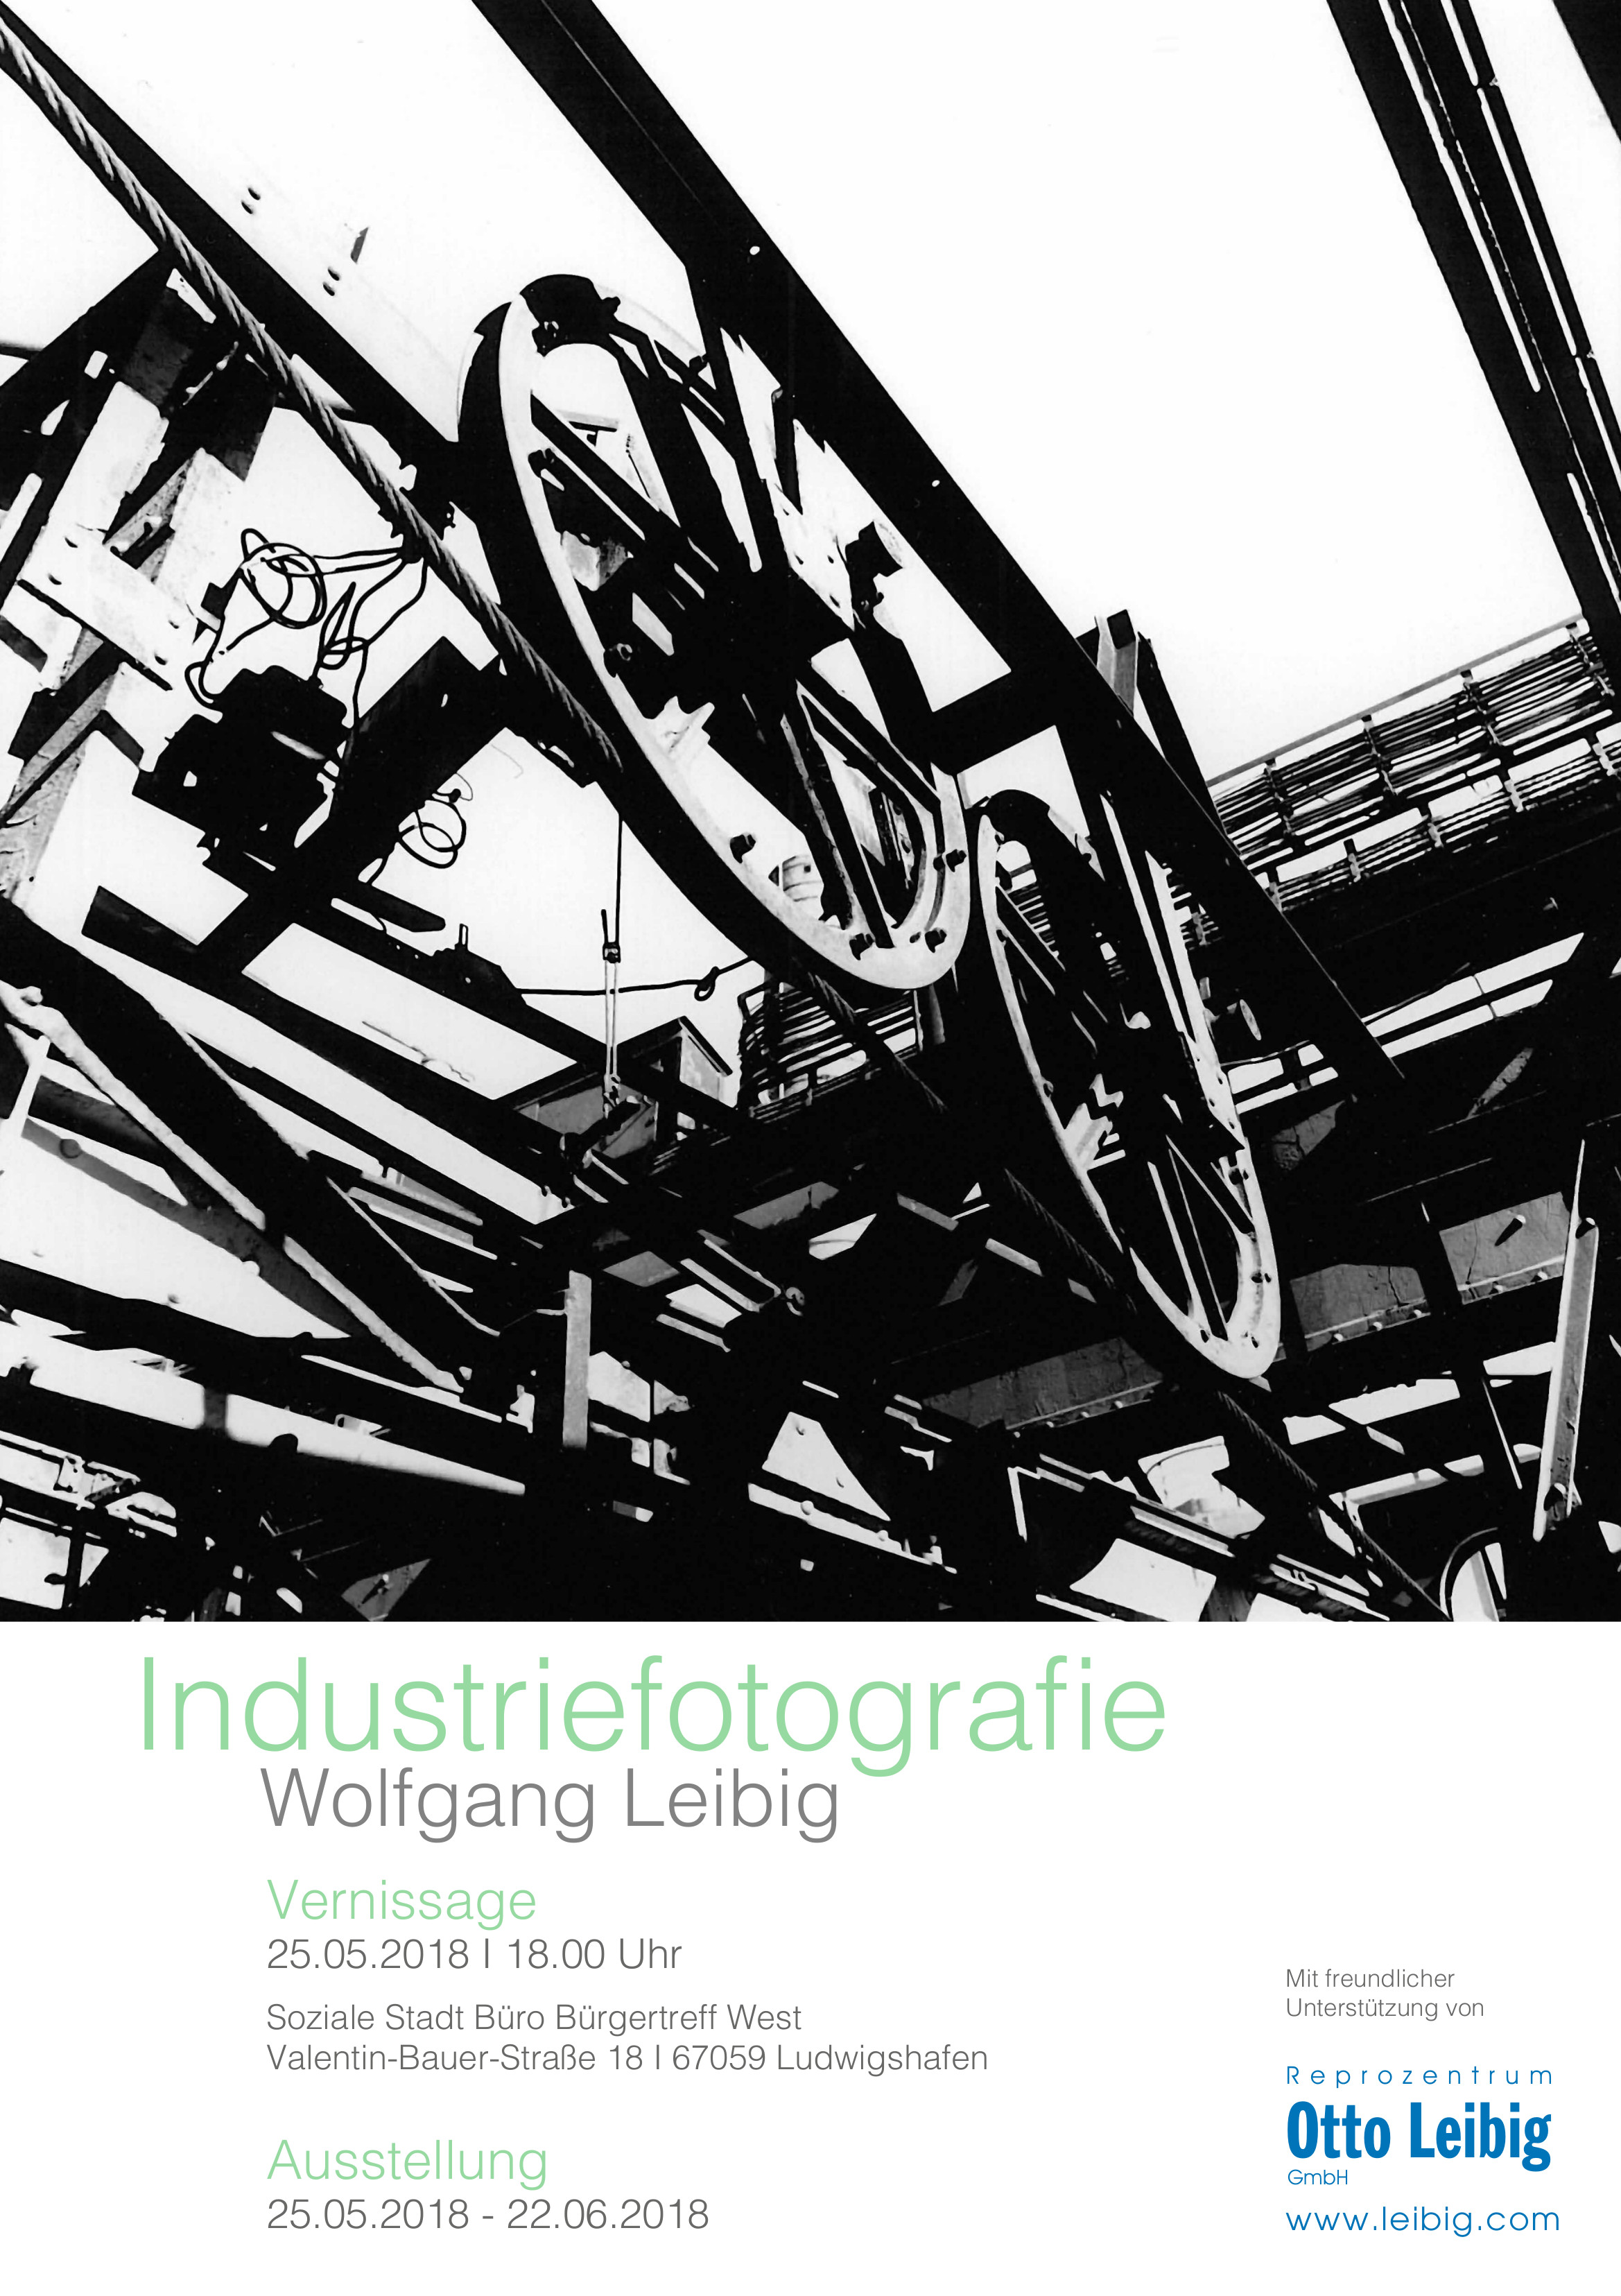 Leibig Ausstellung Industriefotografie Plakat W04181c